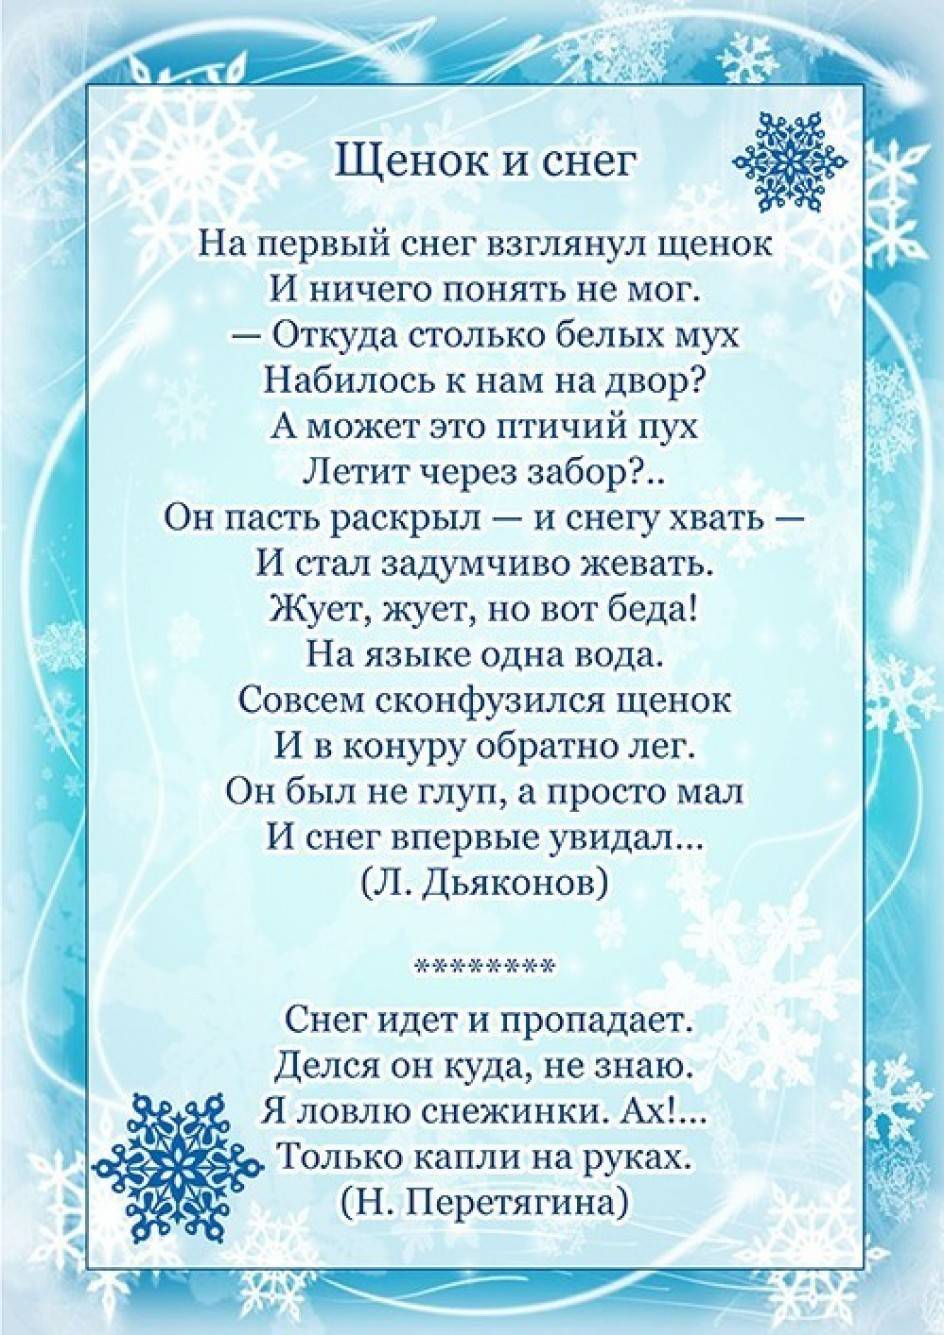 Стихи про снежинки для детей 3-4, 4-5 и 6-7 лет короткие, красивые, стихи снежинок на Новогоднем утреннике, перед танцем